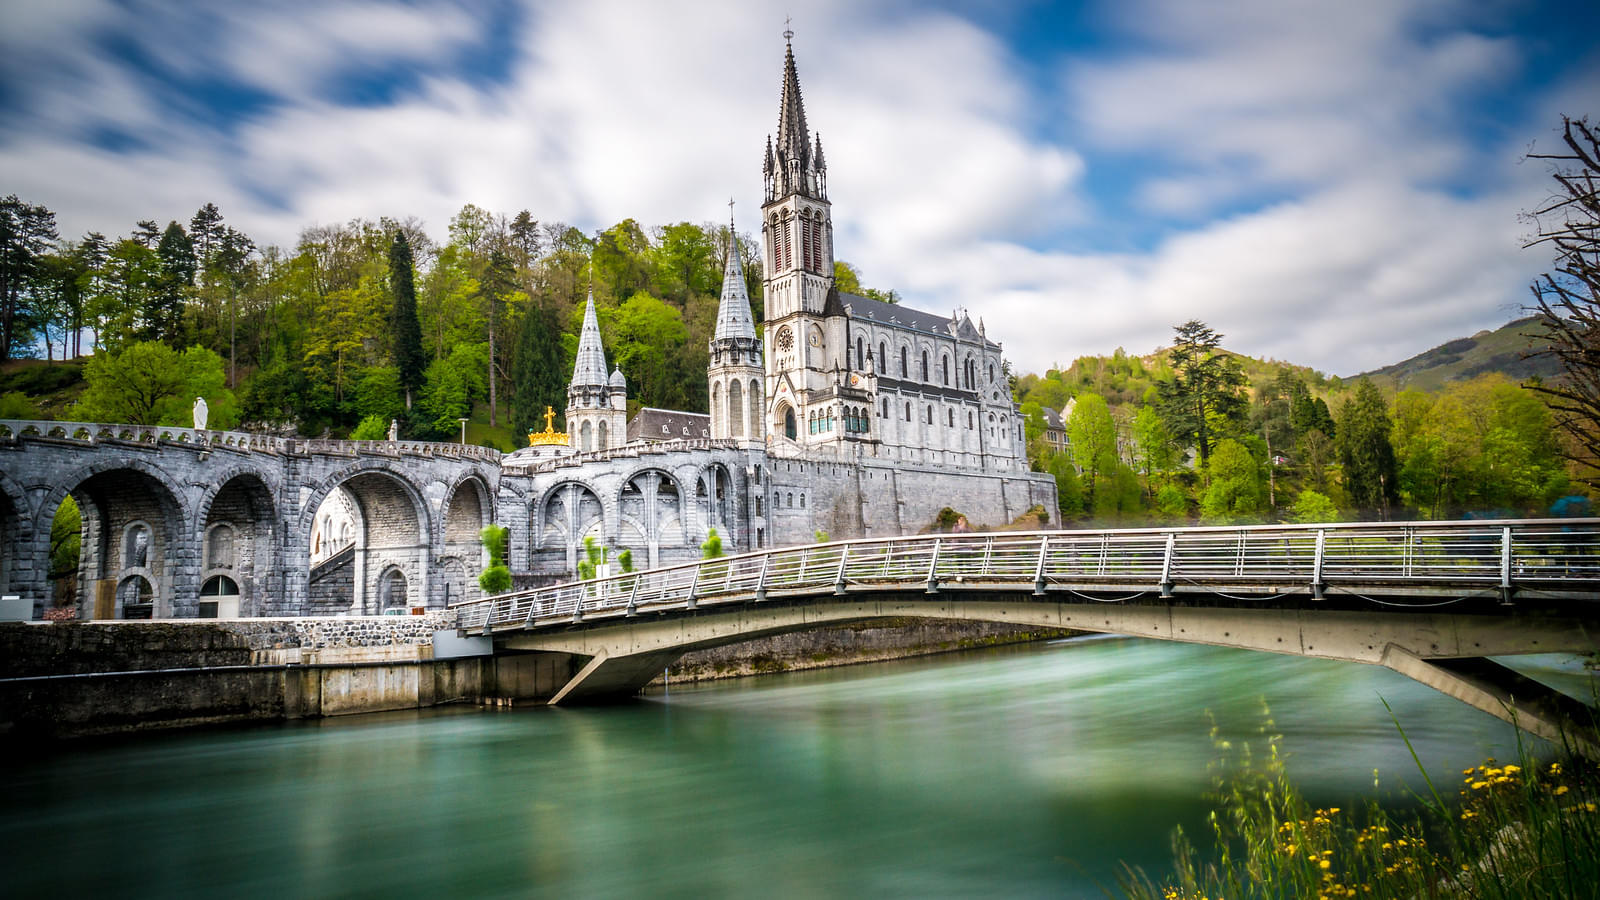 Sanctuaire Notre-Dame de Lourdes Overview